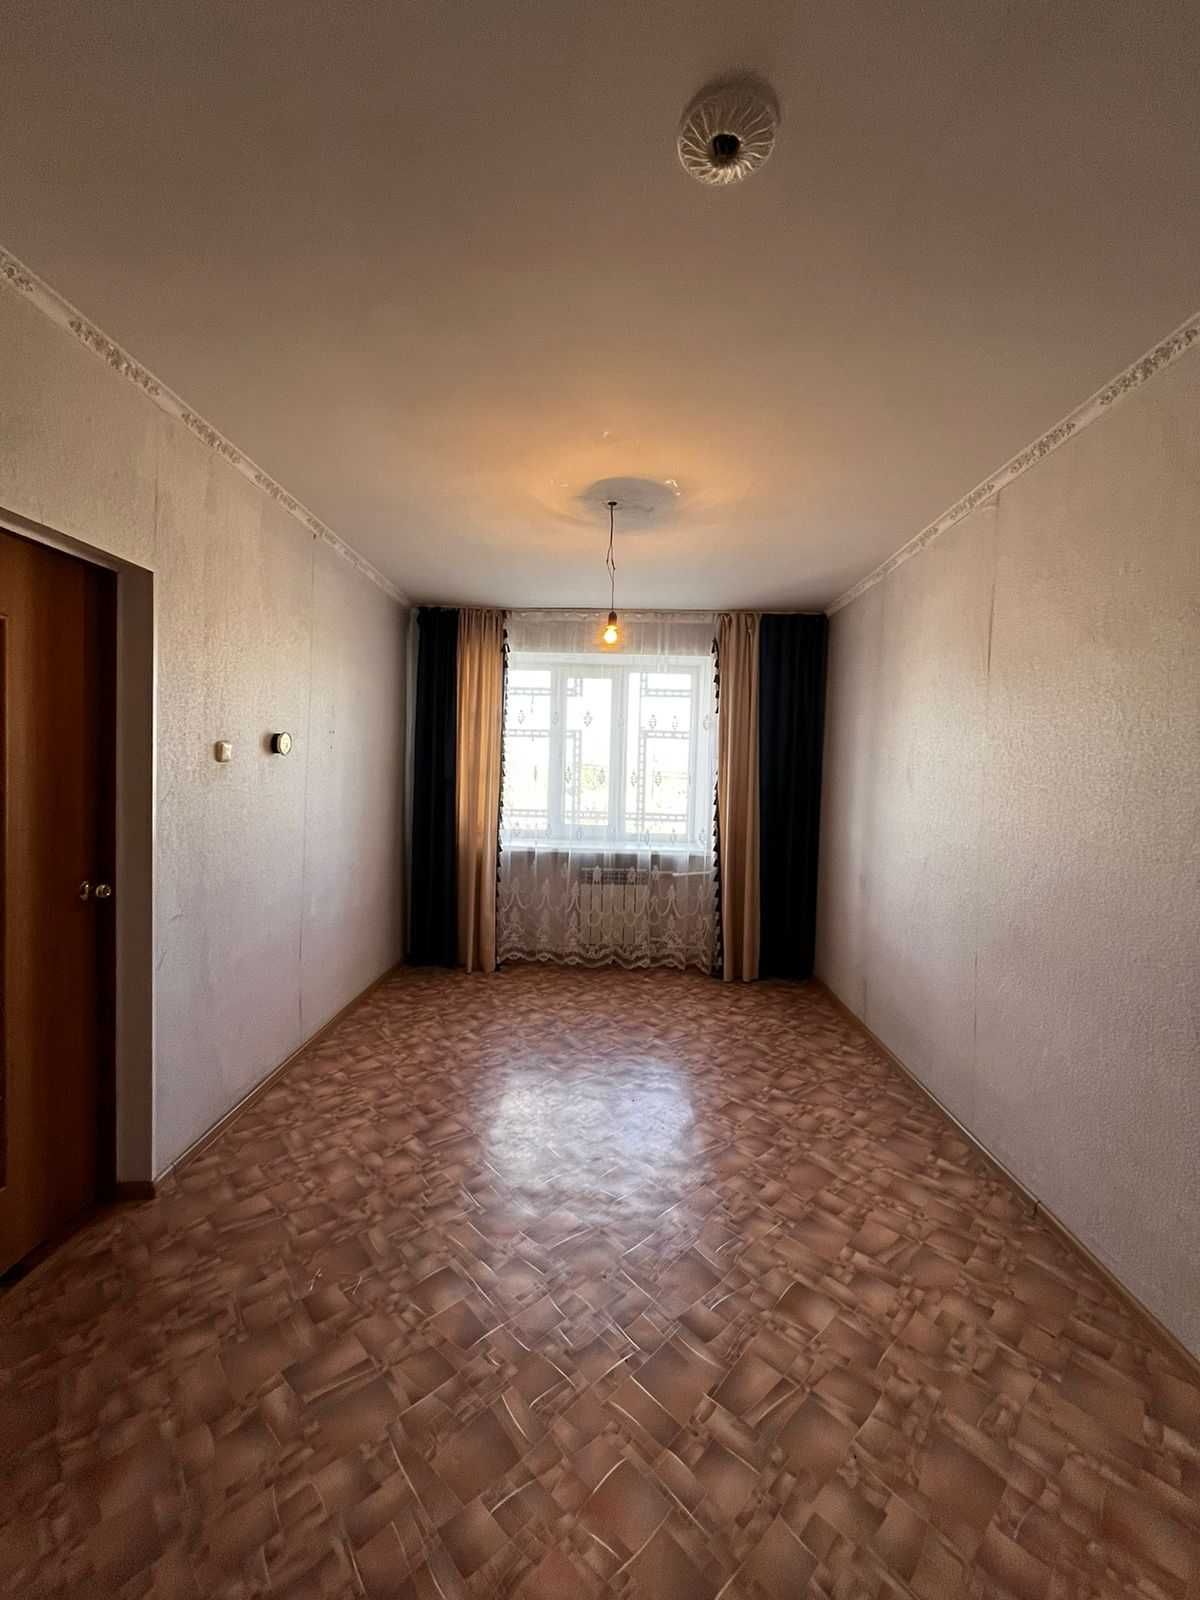 Продам 1 комнатную квартиру(мсо) в р-не Шыгыса.